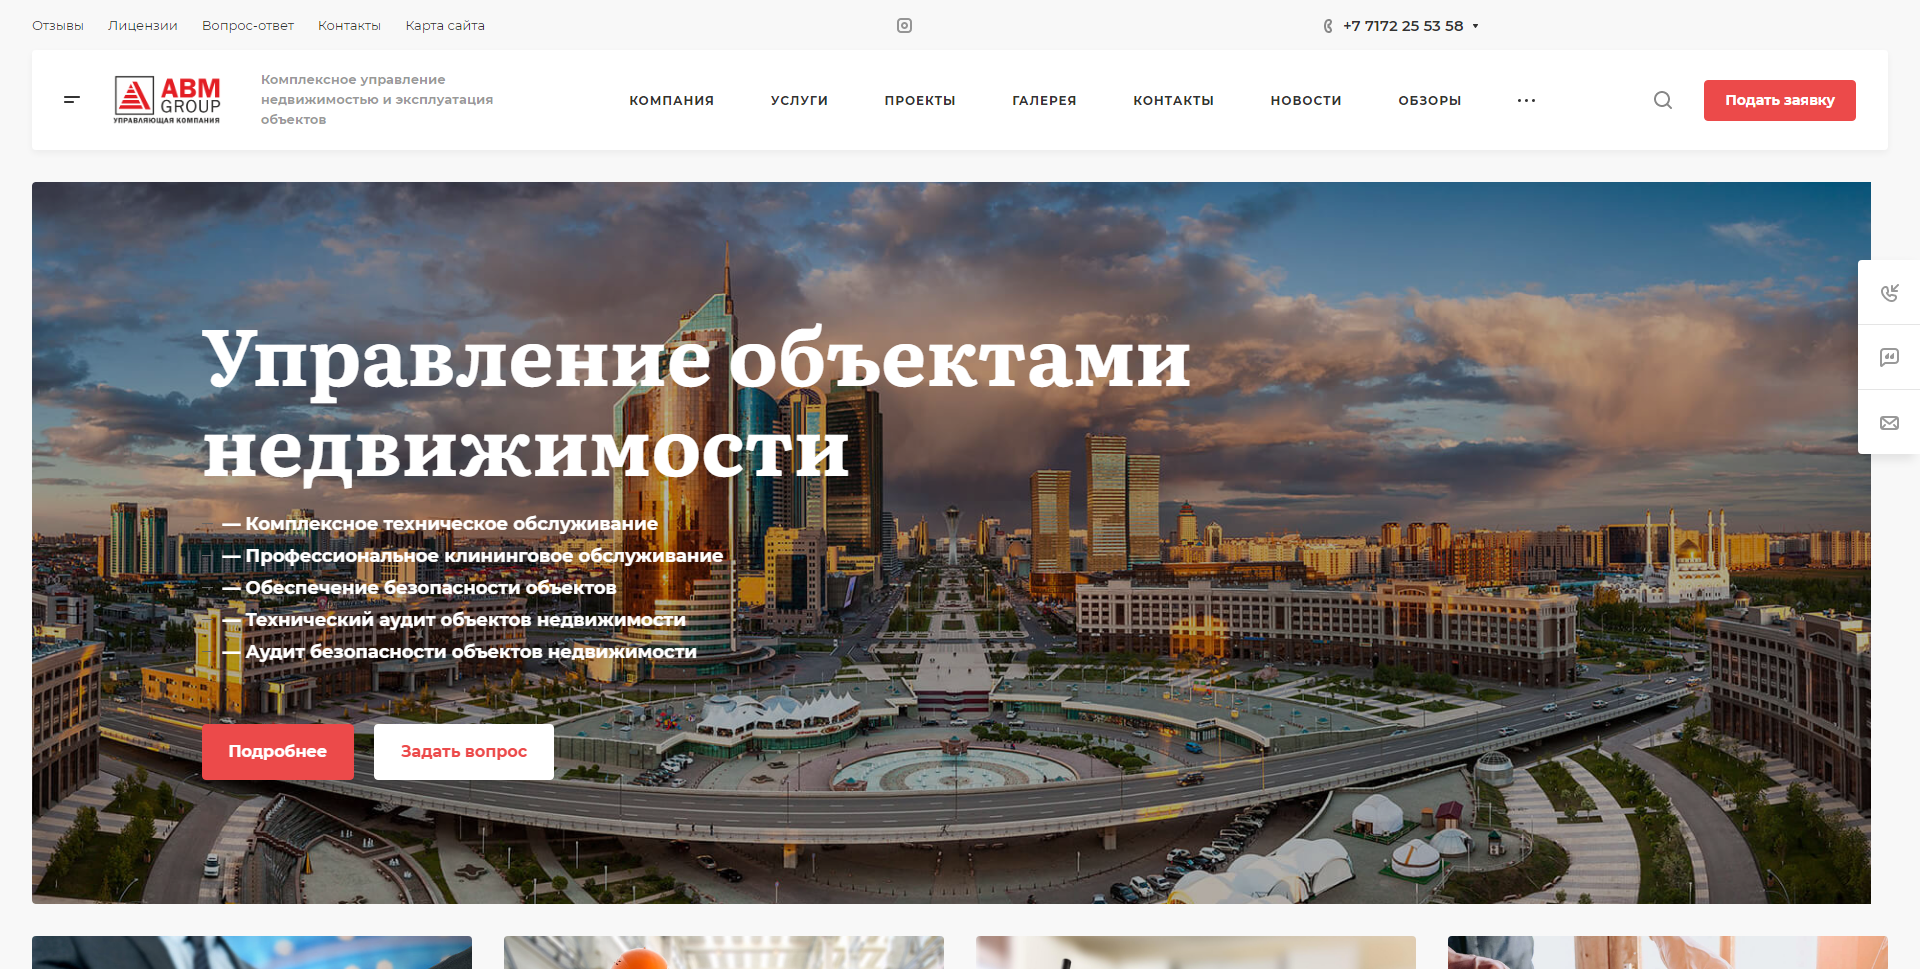 сайт управления и эксплуатации объектов недвижимости в казахстане «аbm group»